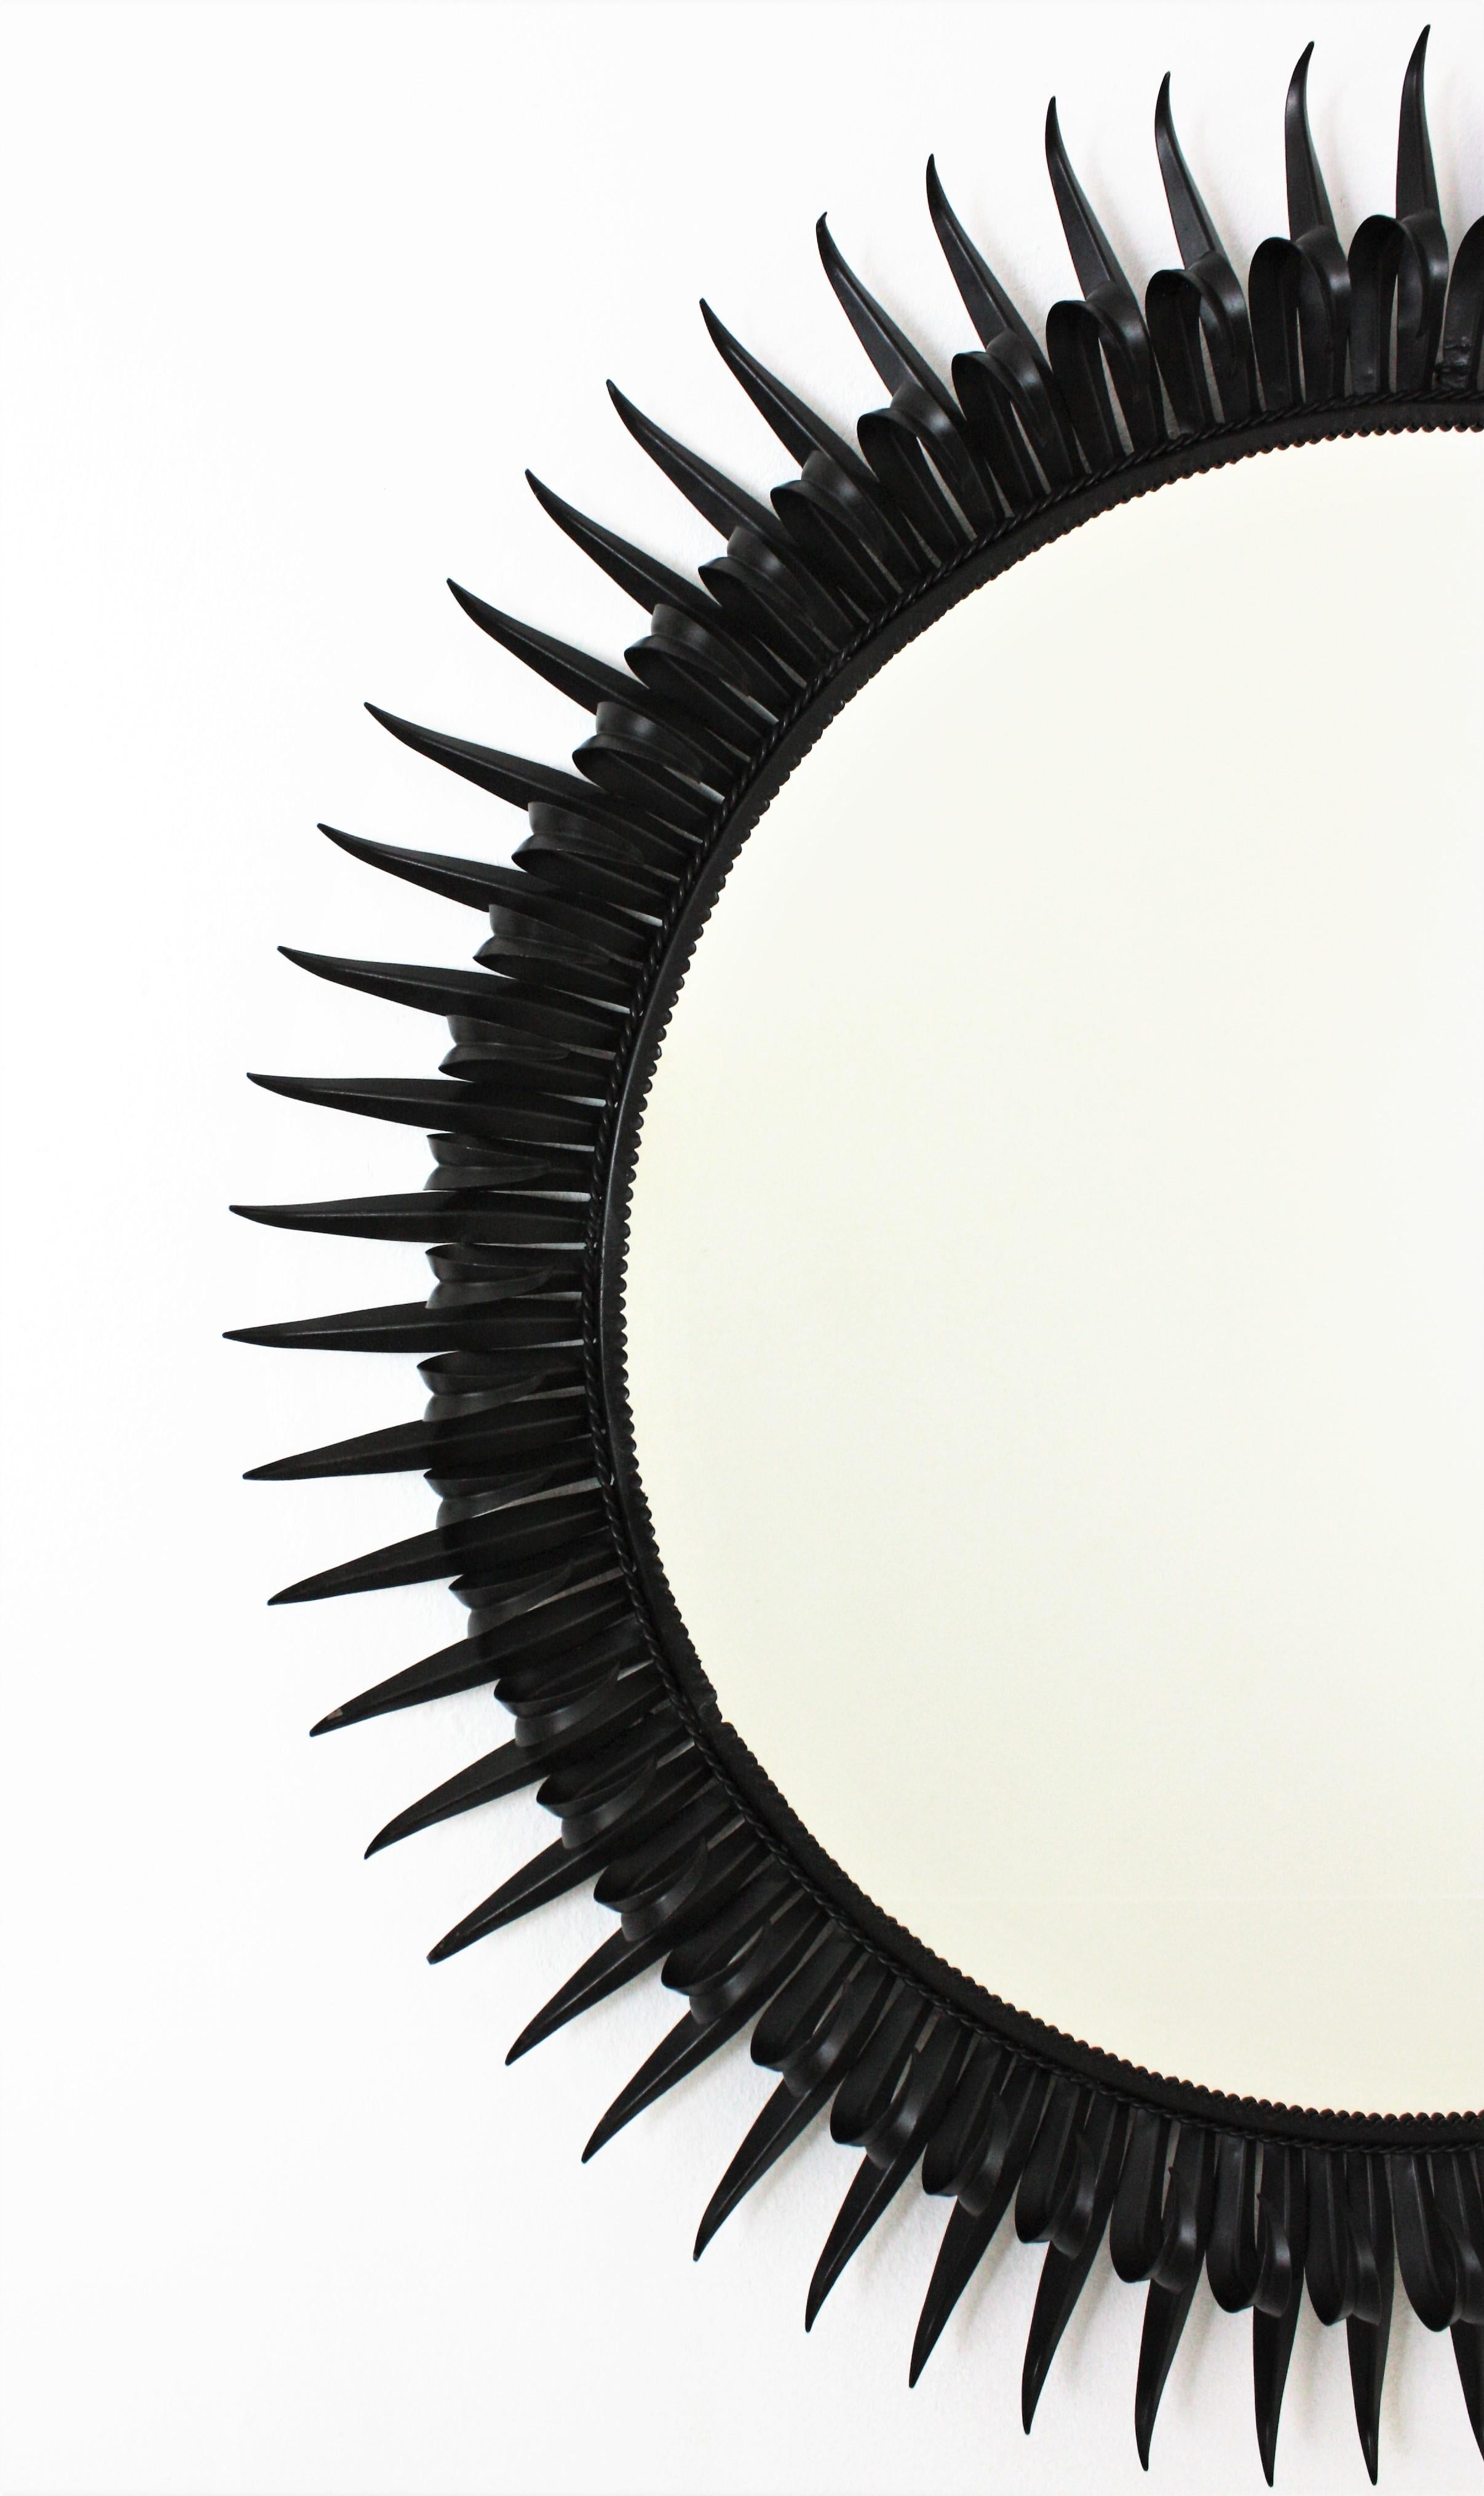 French Sunburst Eyelash Mirror in Black Wrought Iron, Large Scale